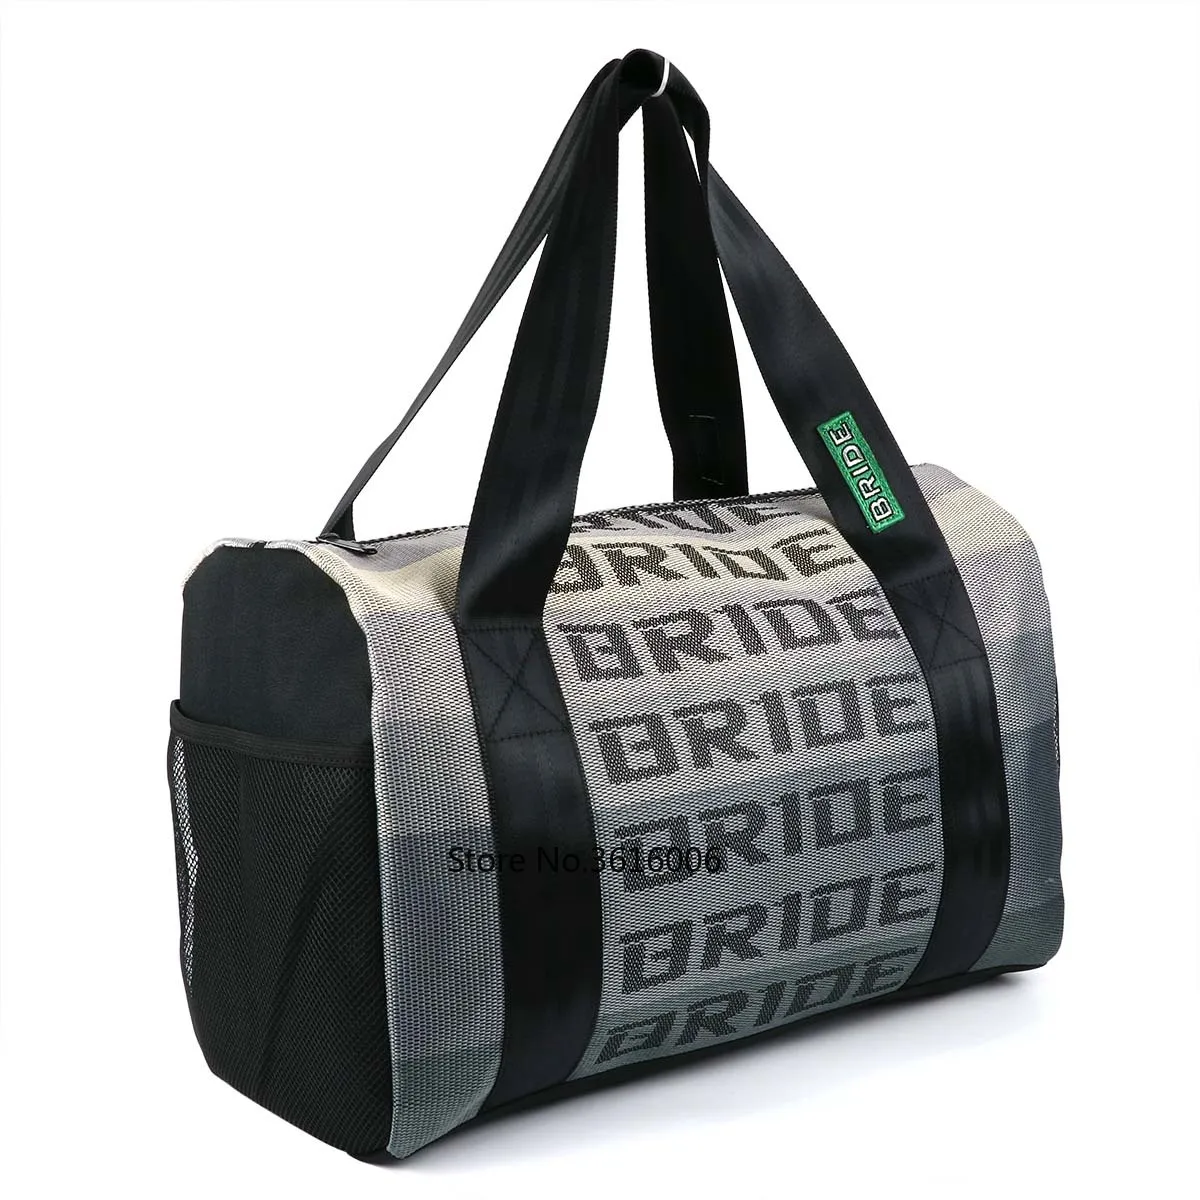 JDM стильная тканевая сумка для невесты, сумка для гонок, сумка мессенджер, школьные сумки, сумка для путешествий, сумка для гонок, сувениры